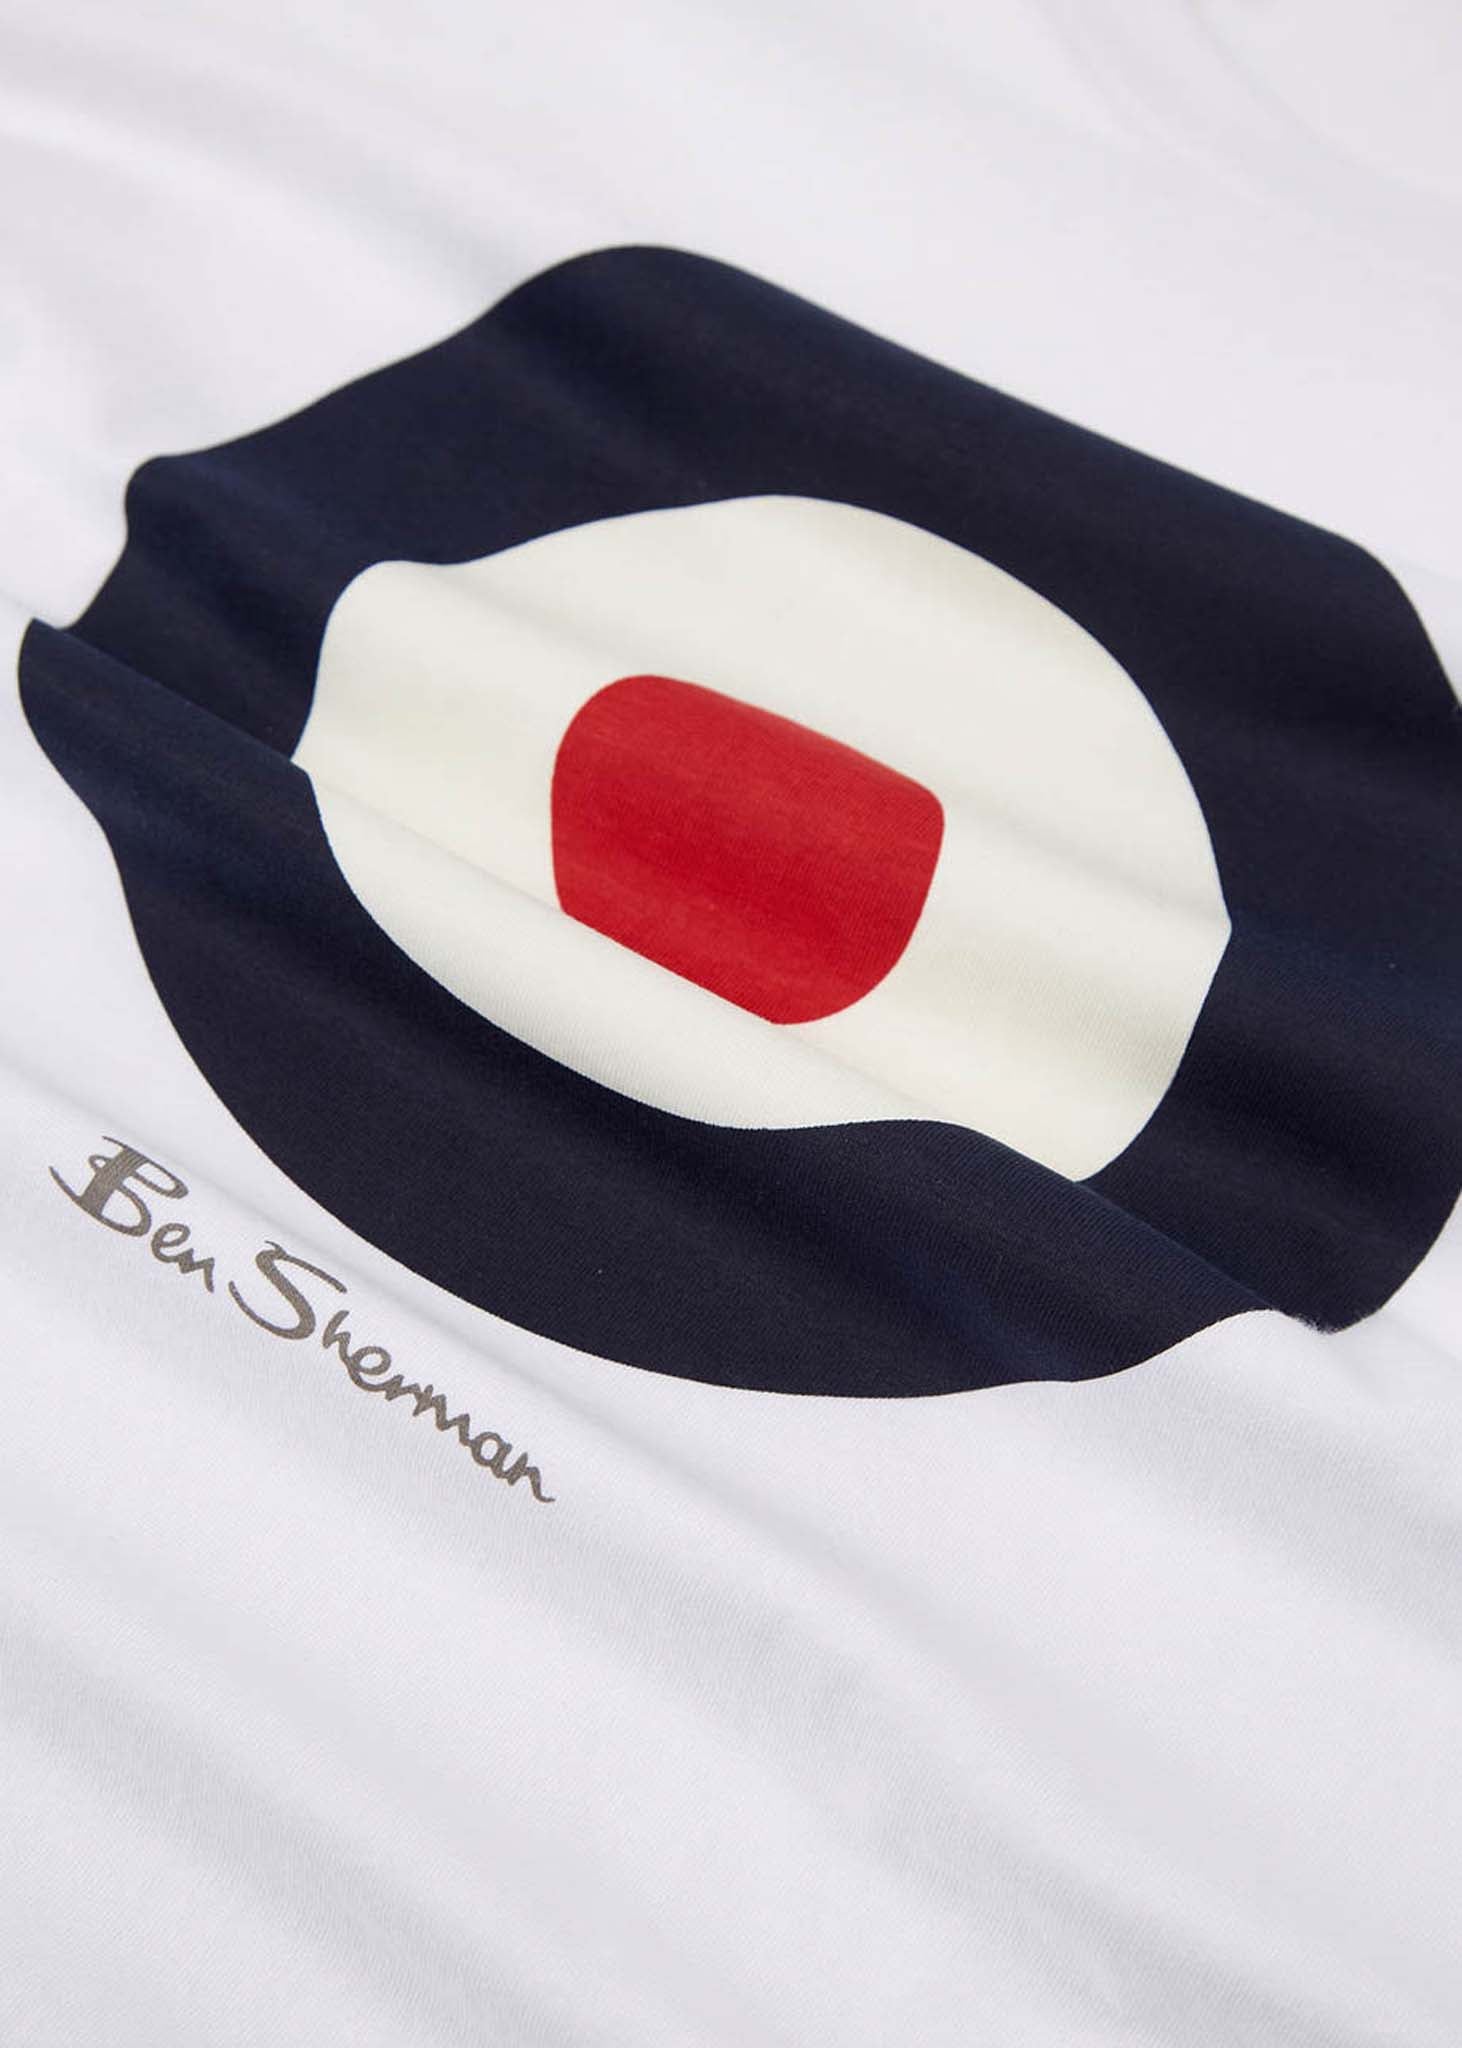 Ben Sherman T-shirts  Target tee - white 